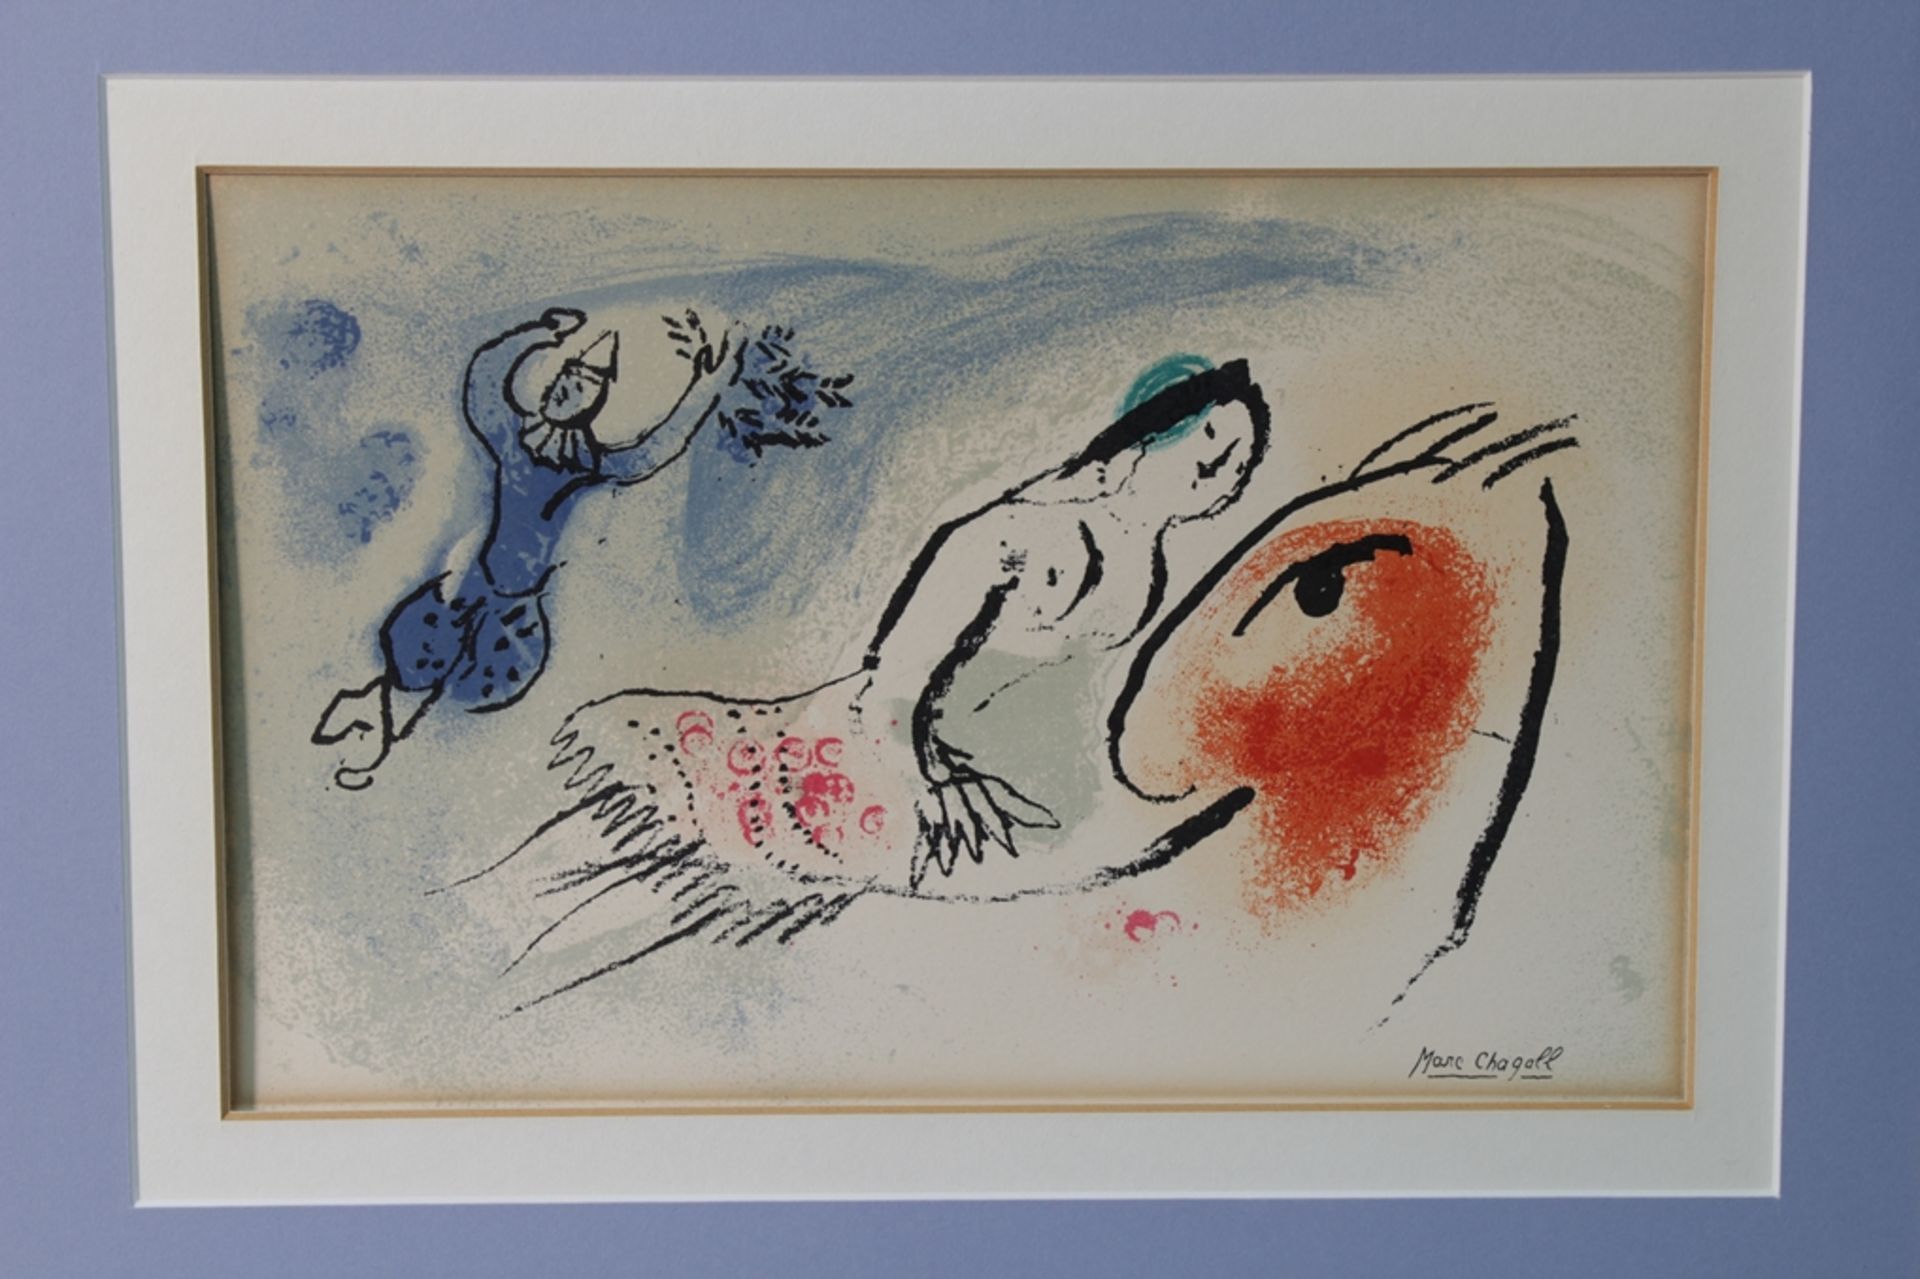 Chagall,Marc Grafik